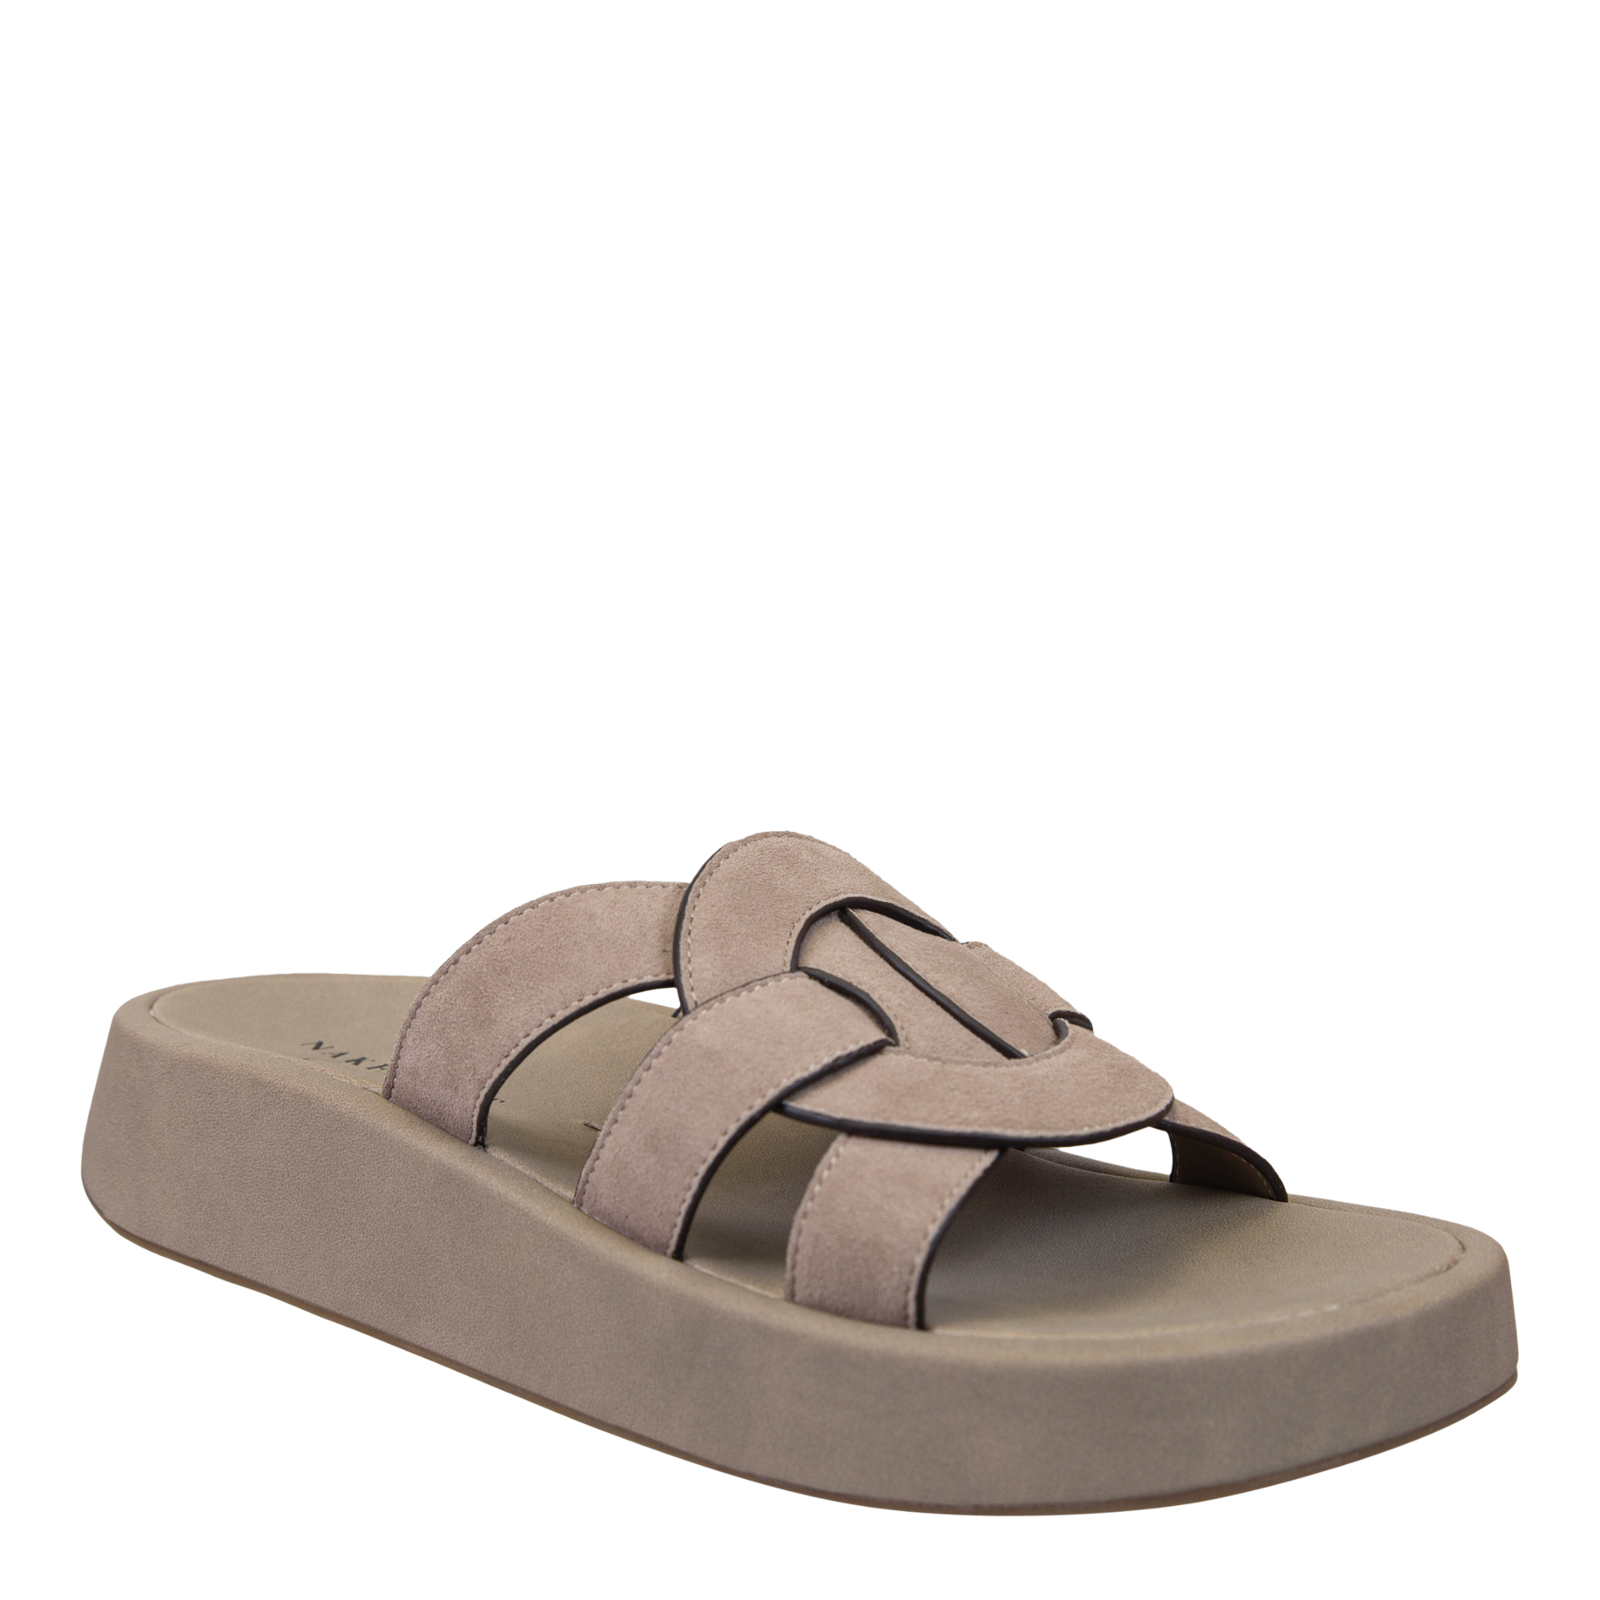 NAKED FEET - MARKET in GREIGE Platform Sandals